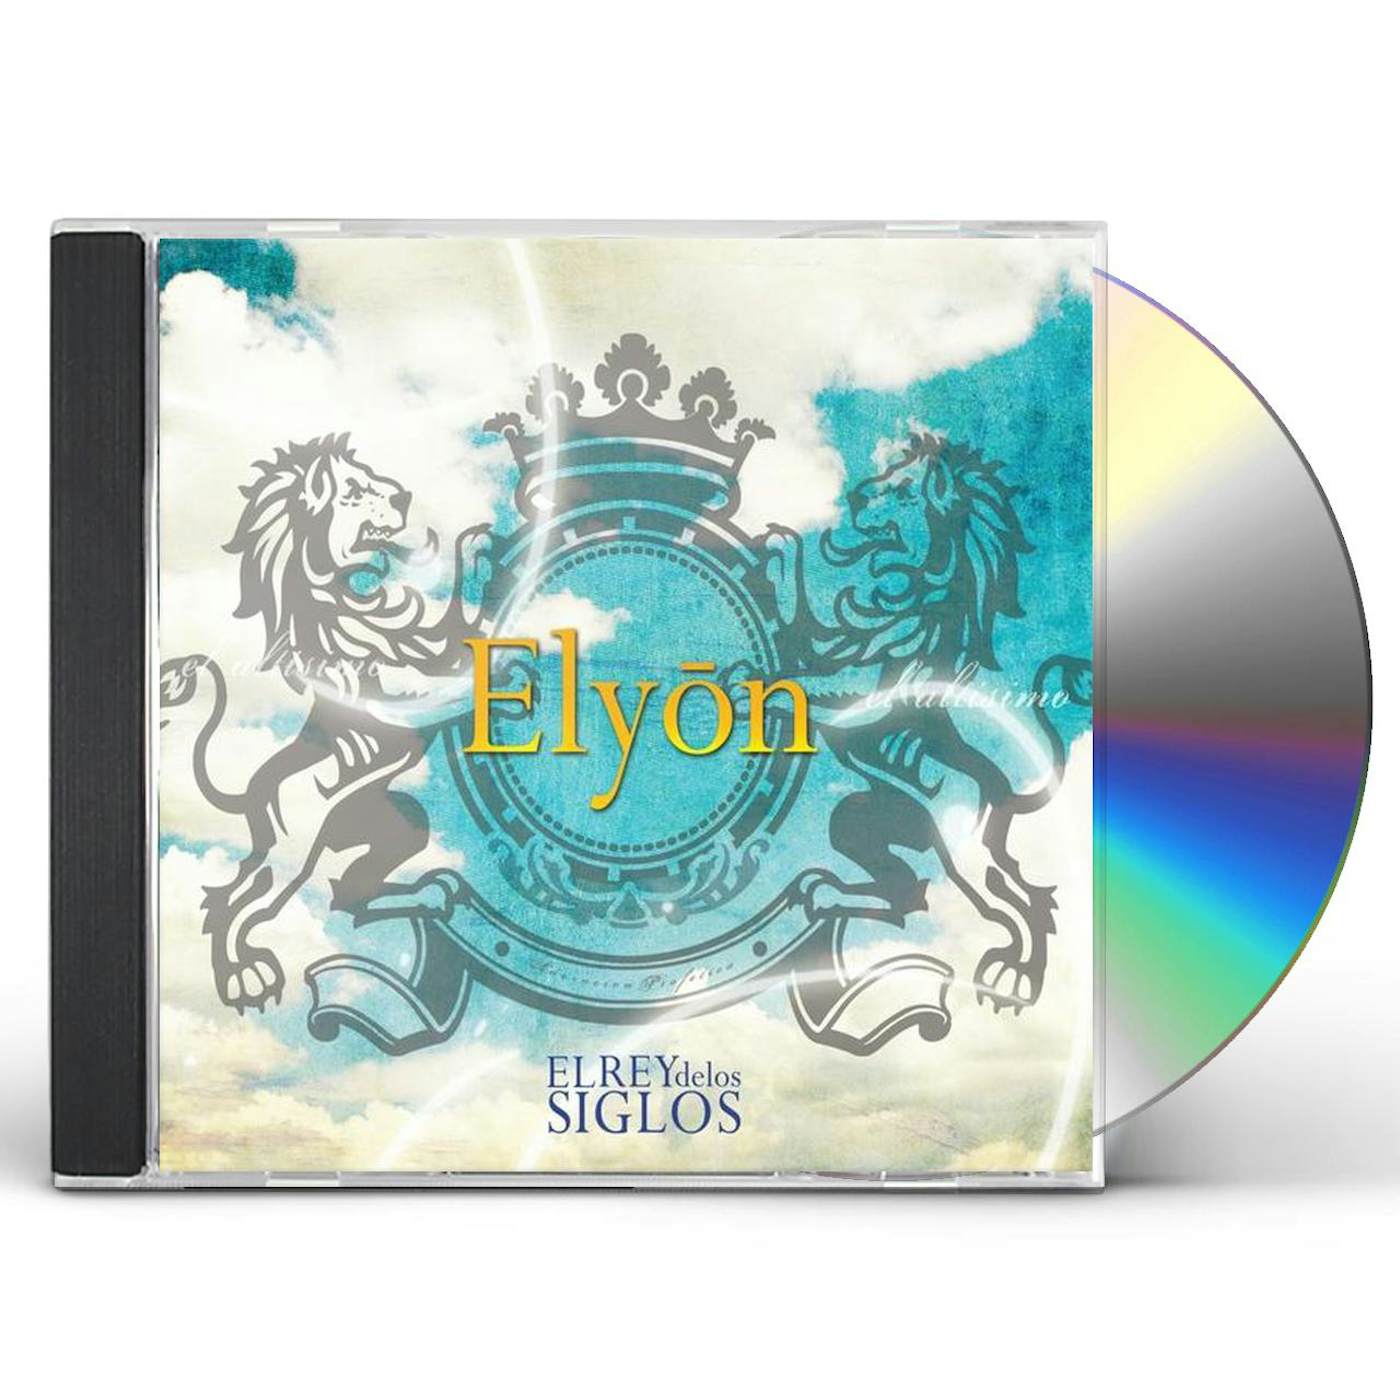 Elyon EL REY DE LOS SIGLOS CD